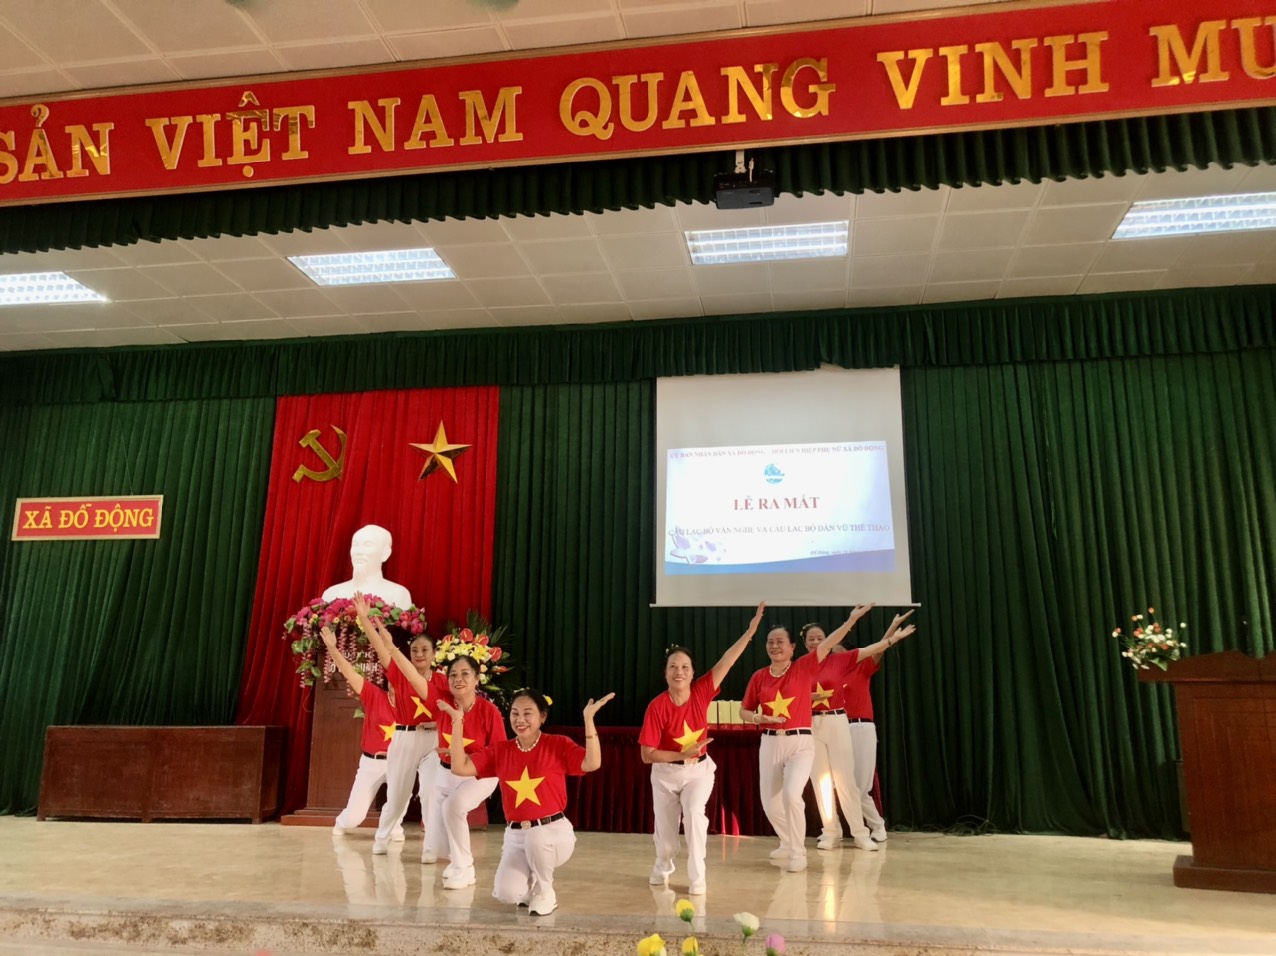 Nhằm đẩy mạnh các hoạt động của Hội người cao tuổi hướng tới kỷ niệm 82 năm ngày truyền thống Người Cao tuổi Việt Nam. Ngày 22/5 thôn Văn Quán xã Đỗ Động đã thành lập và ra mắt Câu lạc liên thế hệ tự giúp nhau.